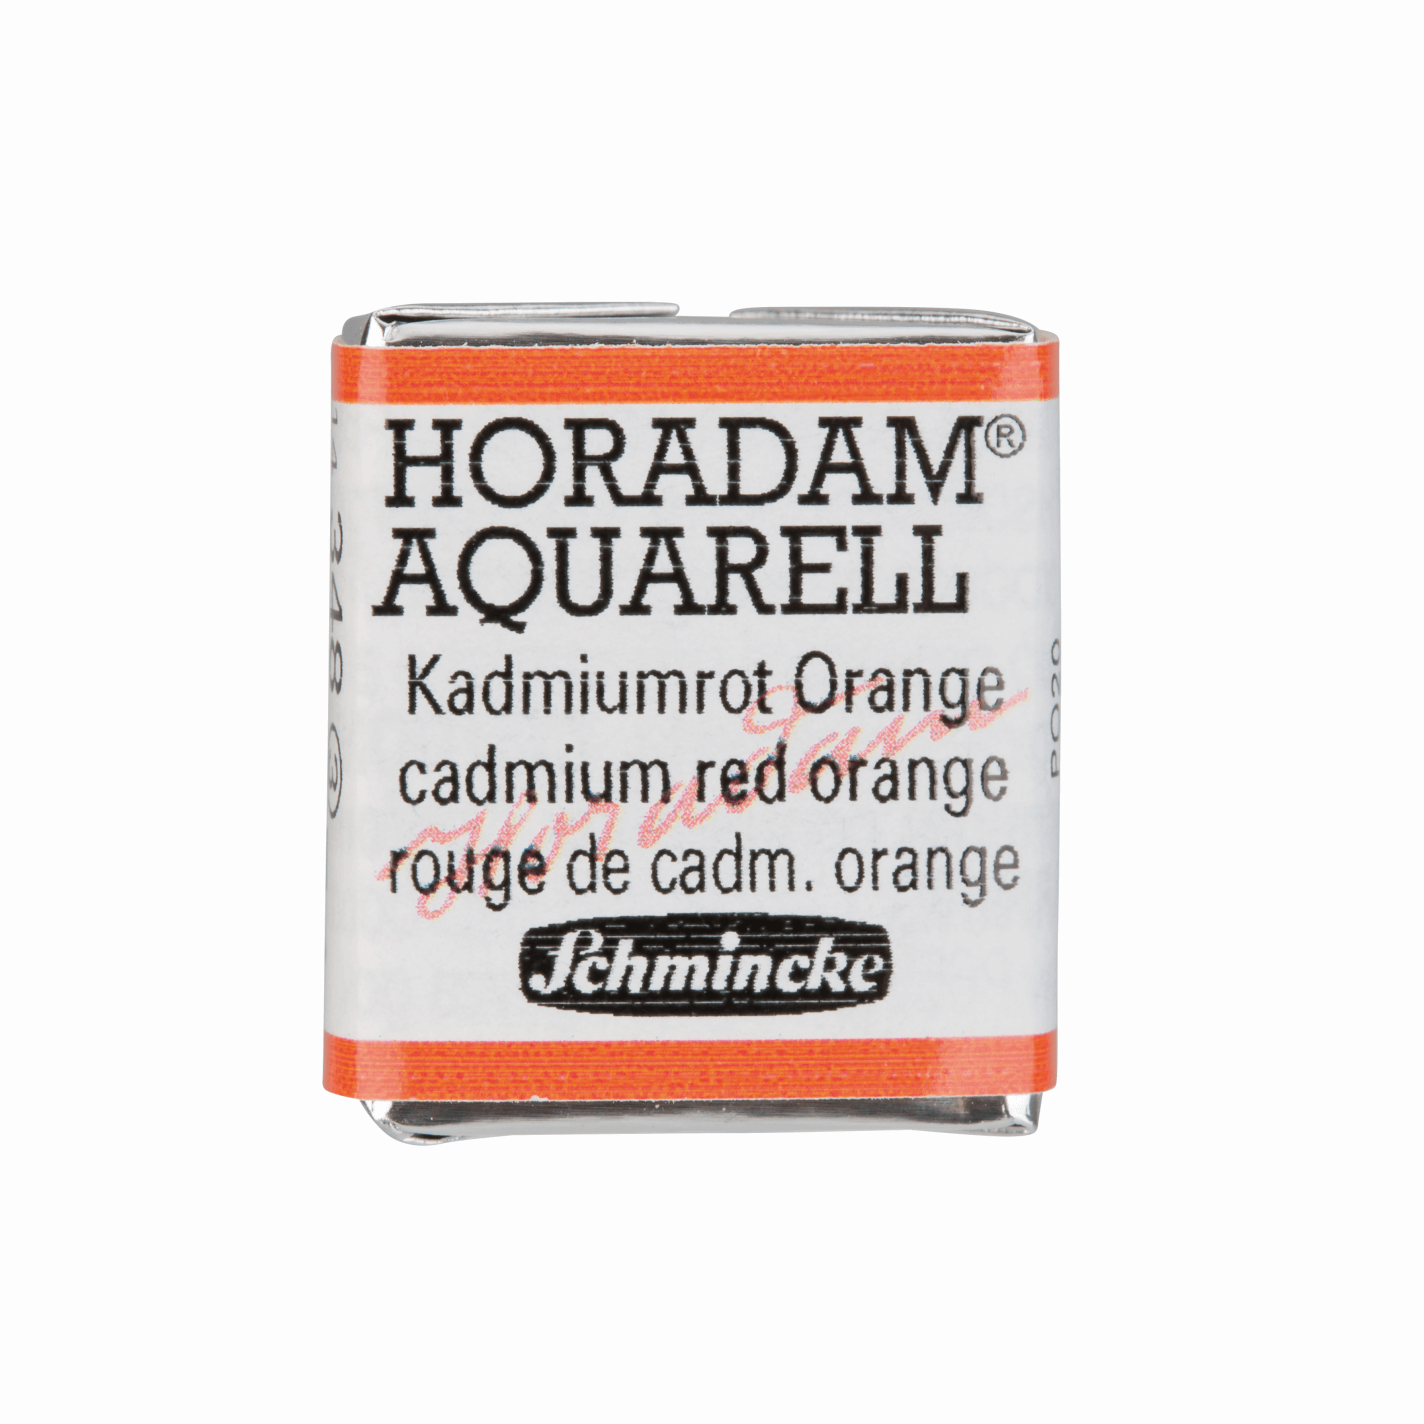 Schmincke Horadam Aquarell pans 1/2 pan Cadmium Red Orange